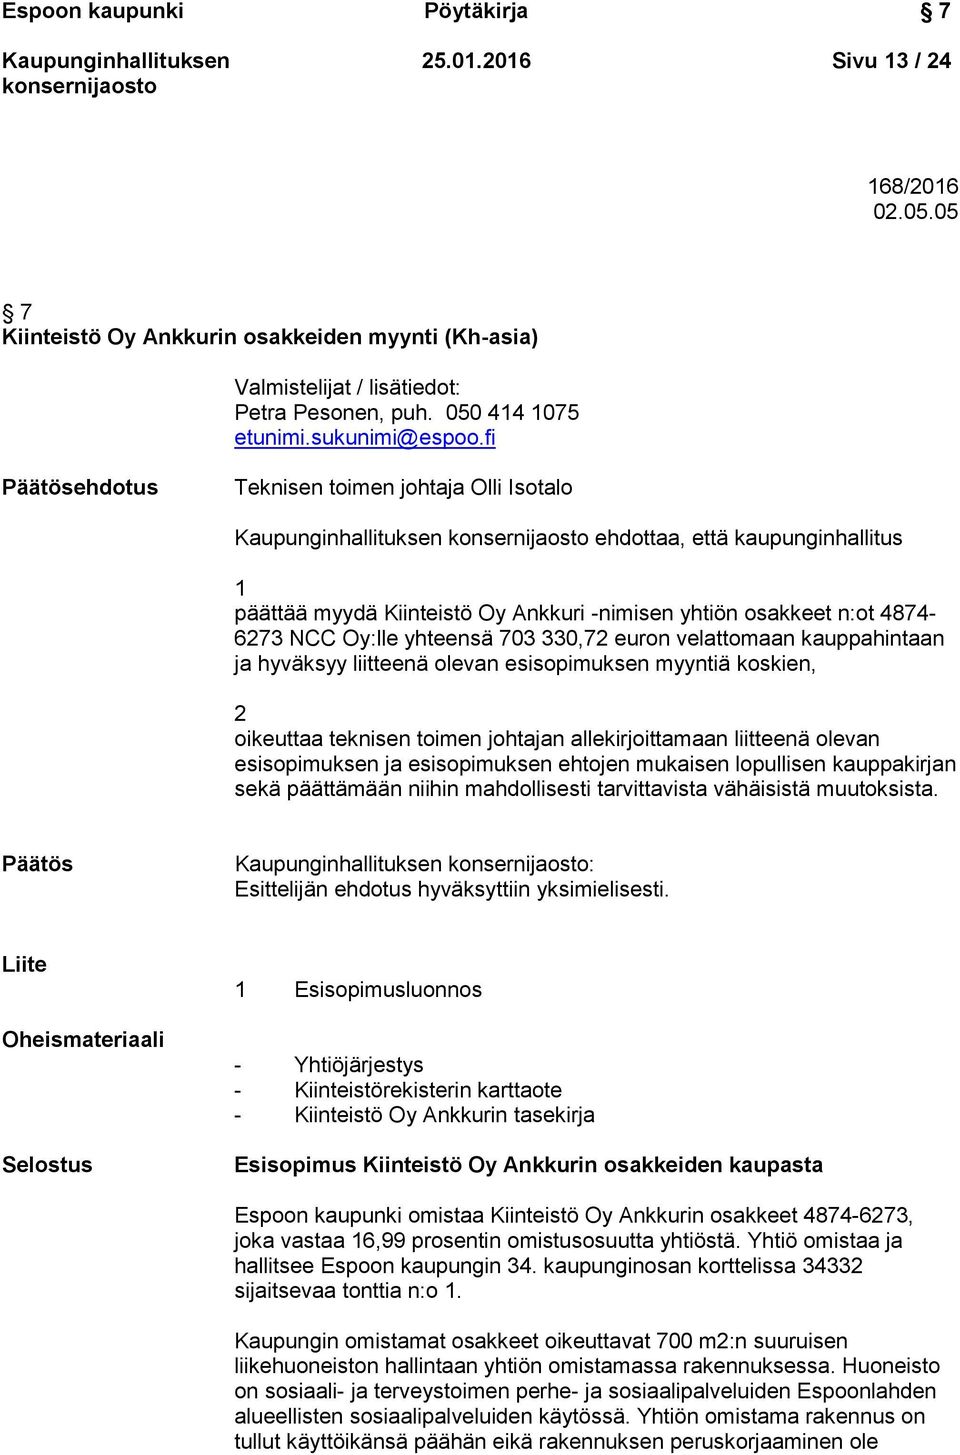 fi Päätösehdotus Teknisen toimen johtaja Olli Isotalo ehdottaa, että kaupunginhallitus 1 päättää myydä Kiinteistö Oy Ankkuri -nimisen yhtiön osakkeet n:ot 4874-6273 NCC Oy:lle yhteensä 703 330,72